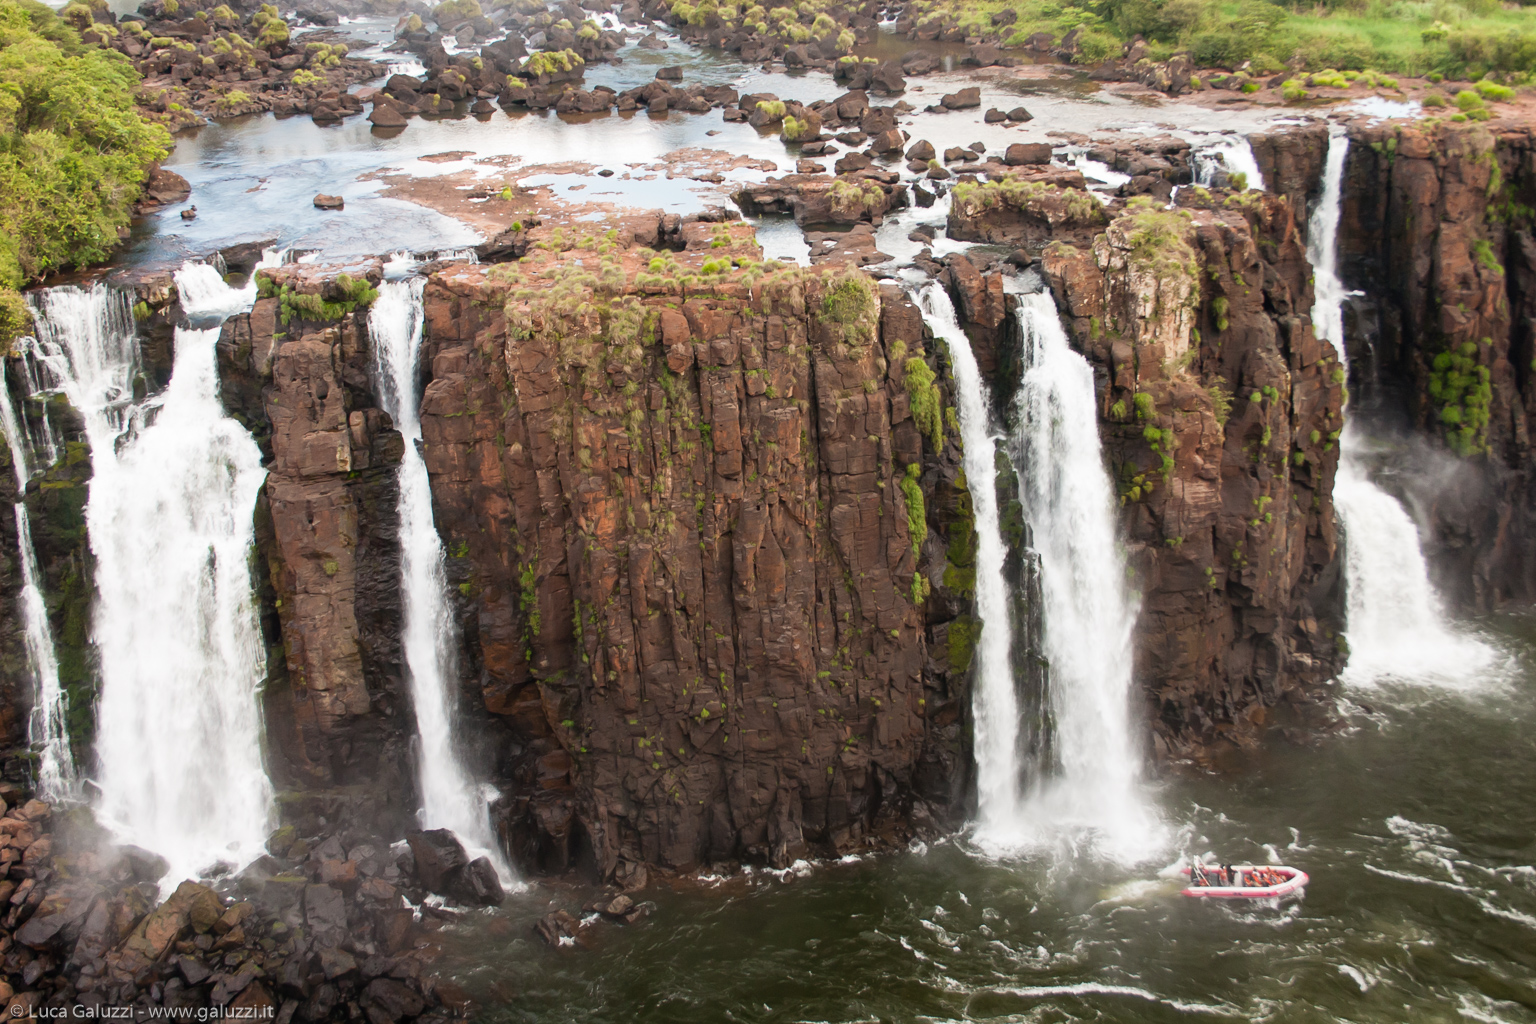 Cataratas del Iguazú, 275 cascate, con altezze fino a 70 metri, lungo 2,7 chilometri del fiume Iguazú